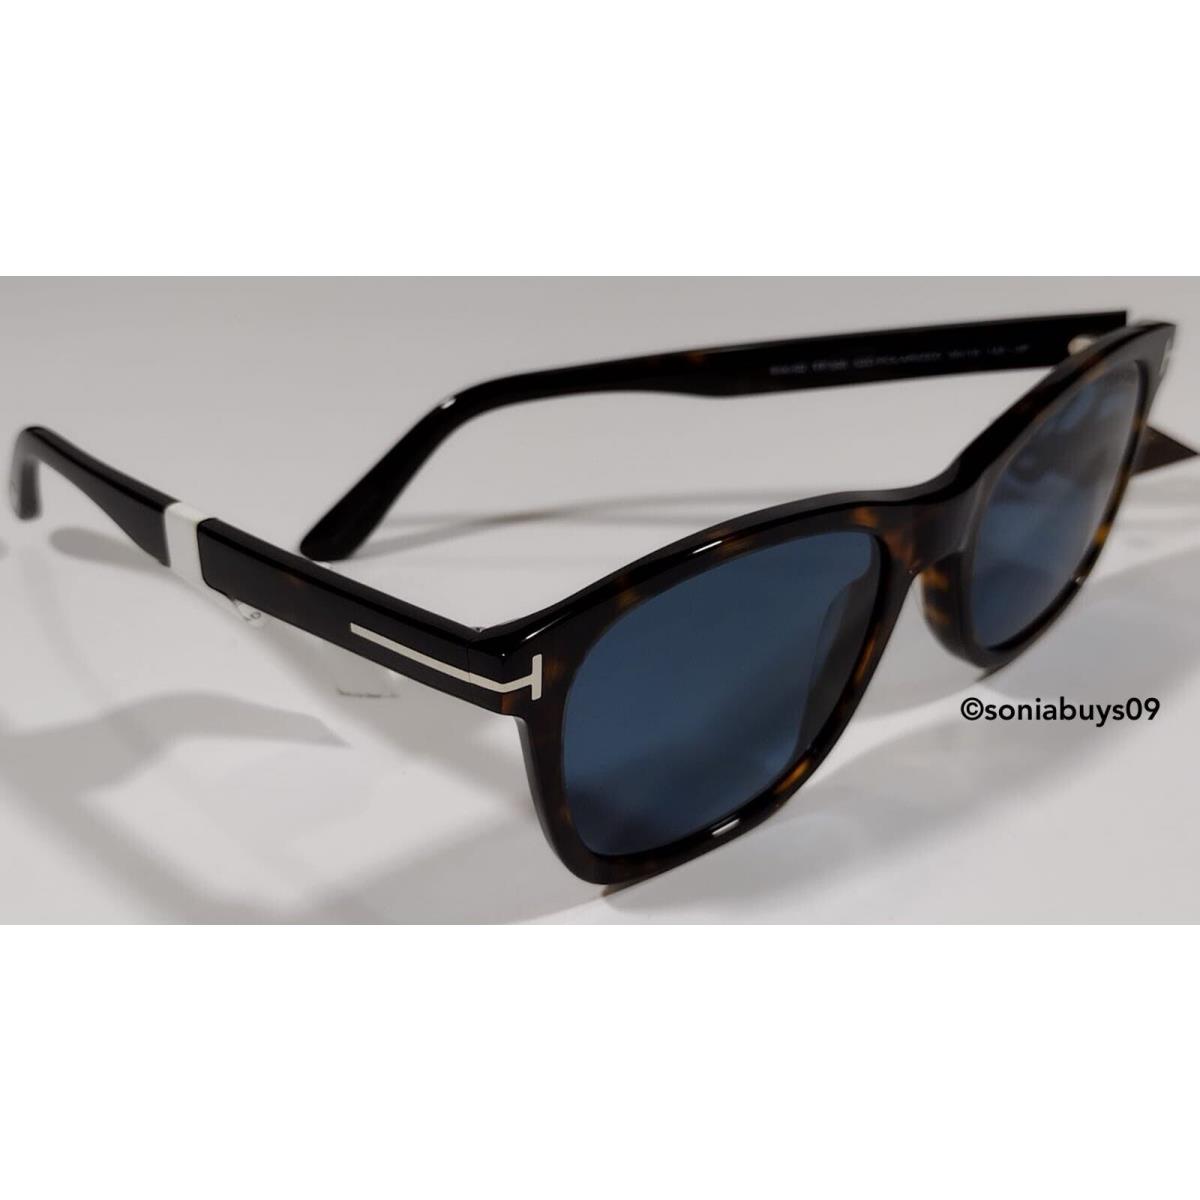 Tom Ford sunglasses Eric - Tortoise Frame, Blue Lens 0